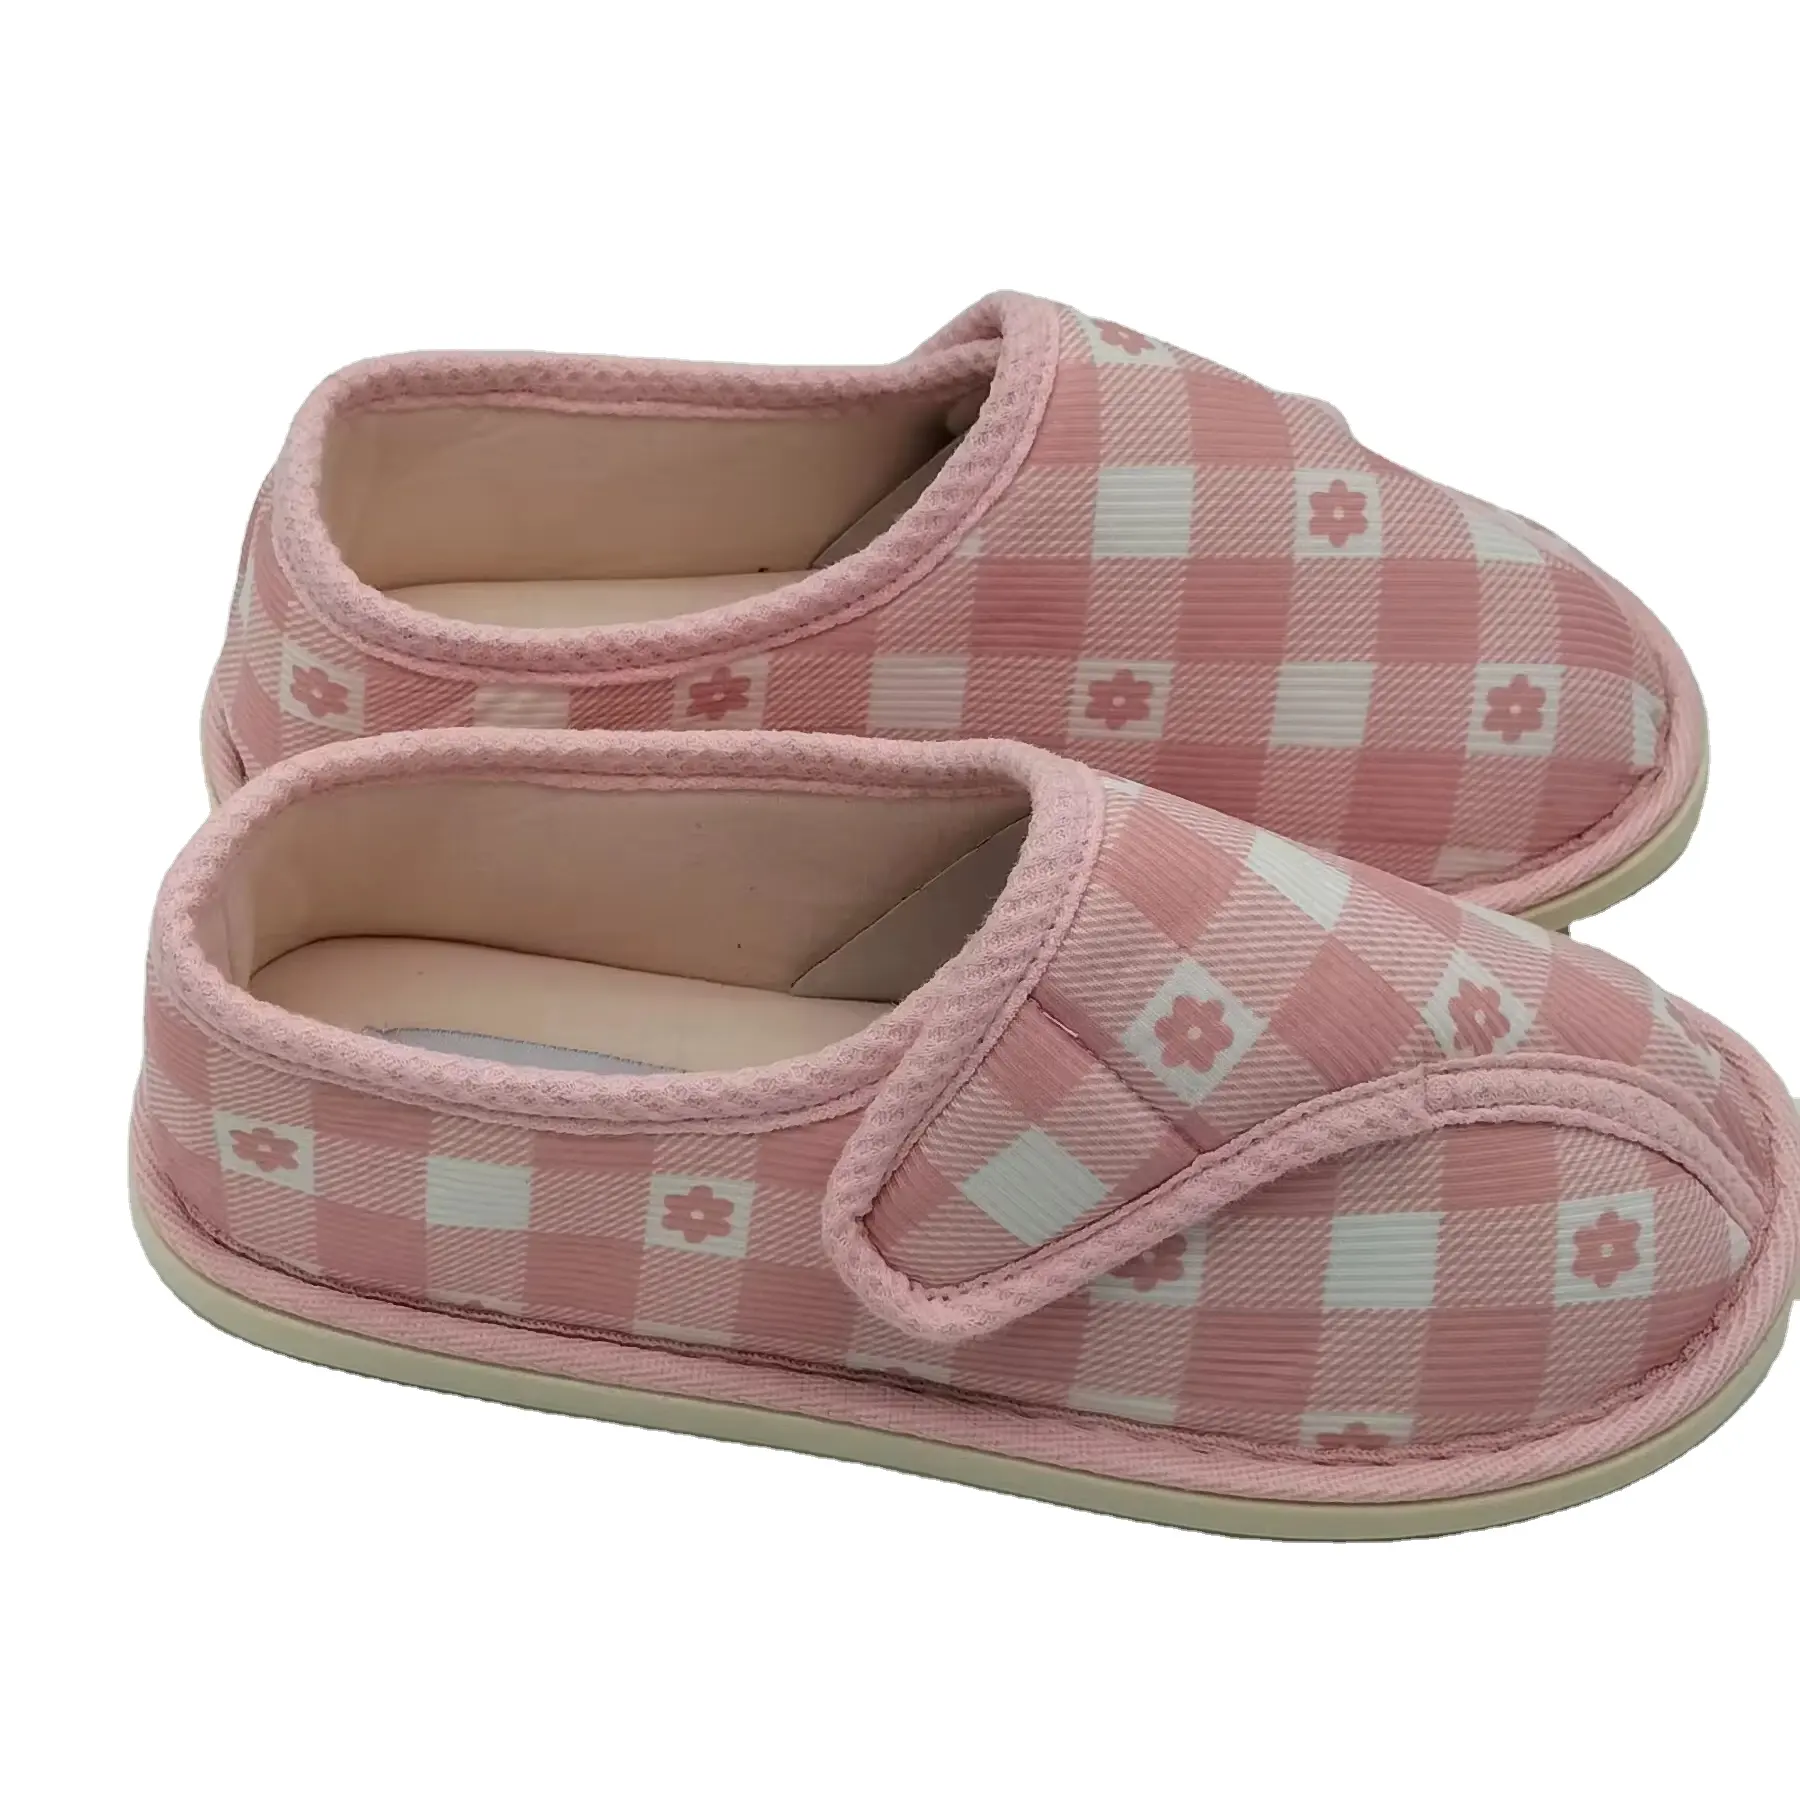 Schlussverkauf Loafers-Schuhe Damen-Schuhe Damen-Leichtleder-freizeitschuhe